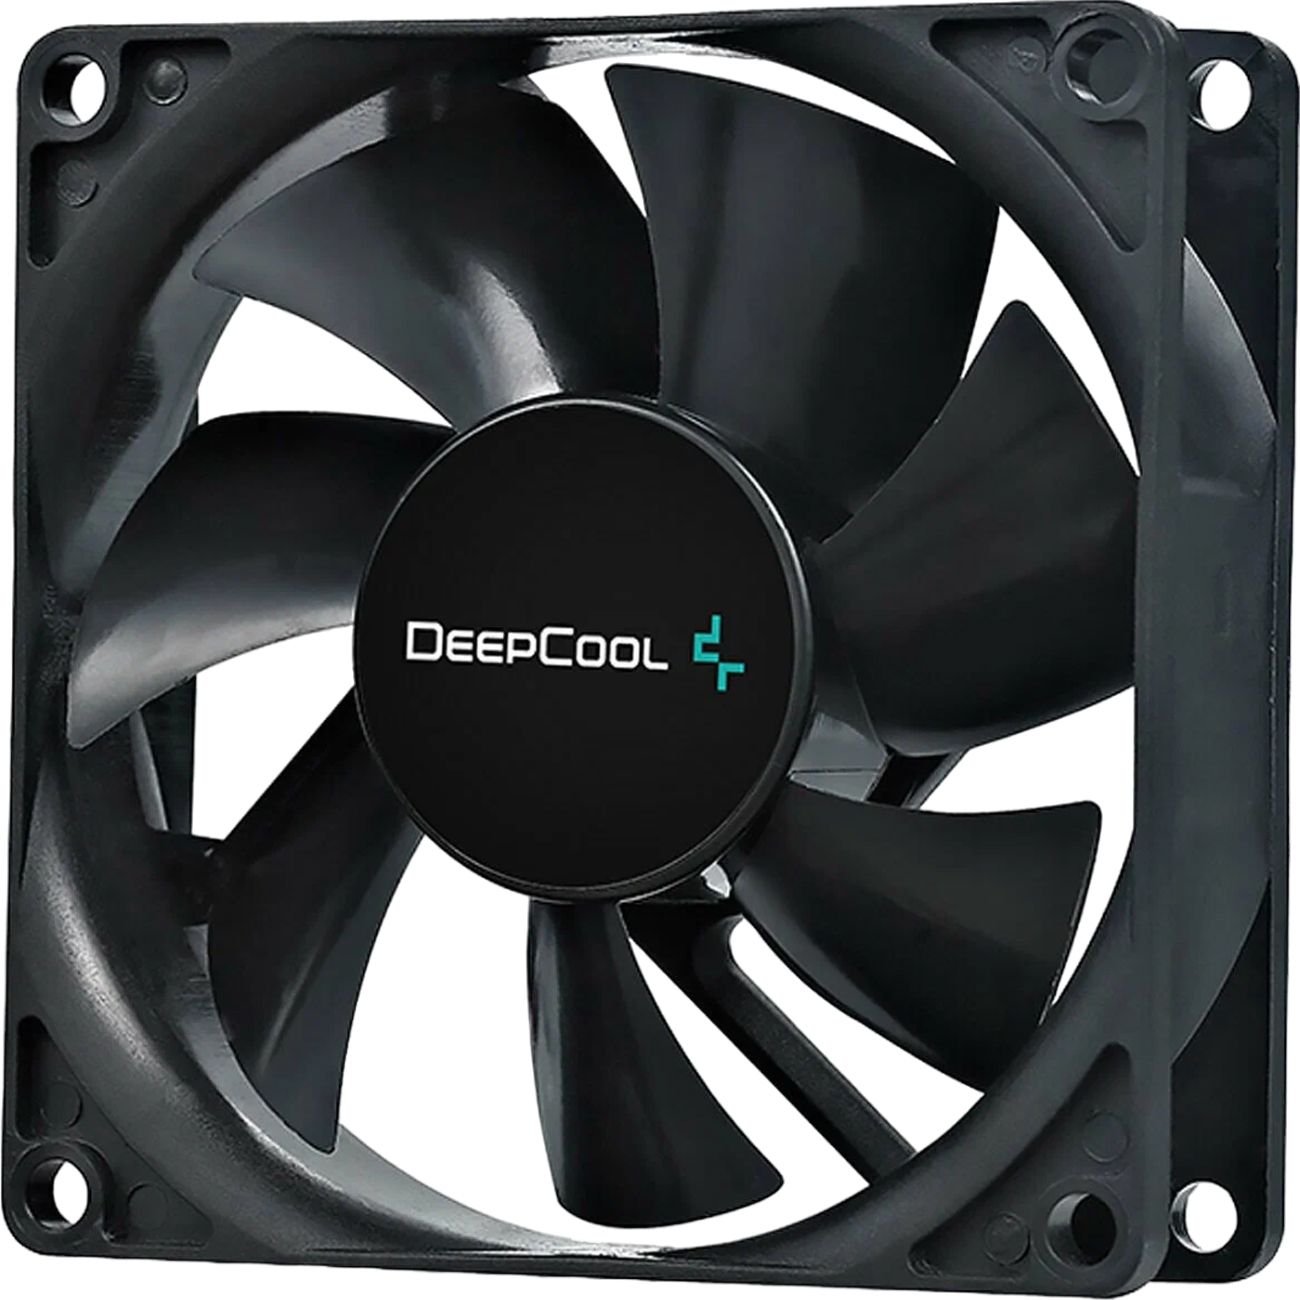 Deepcool fan